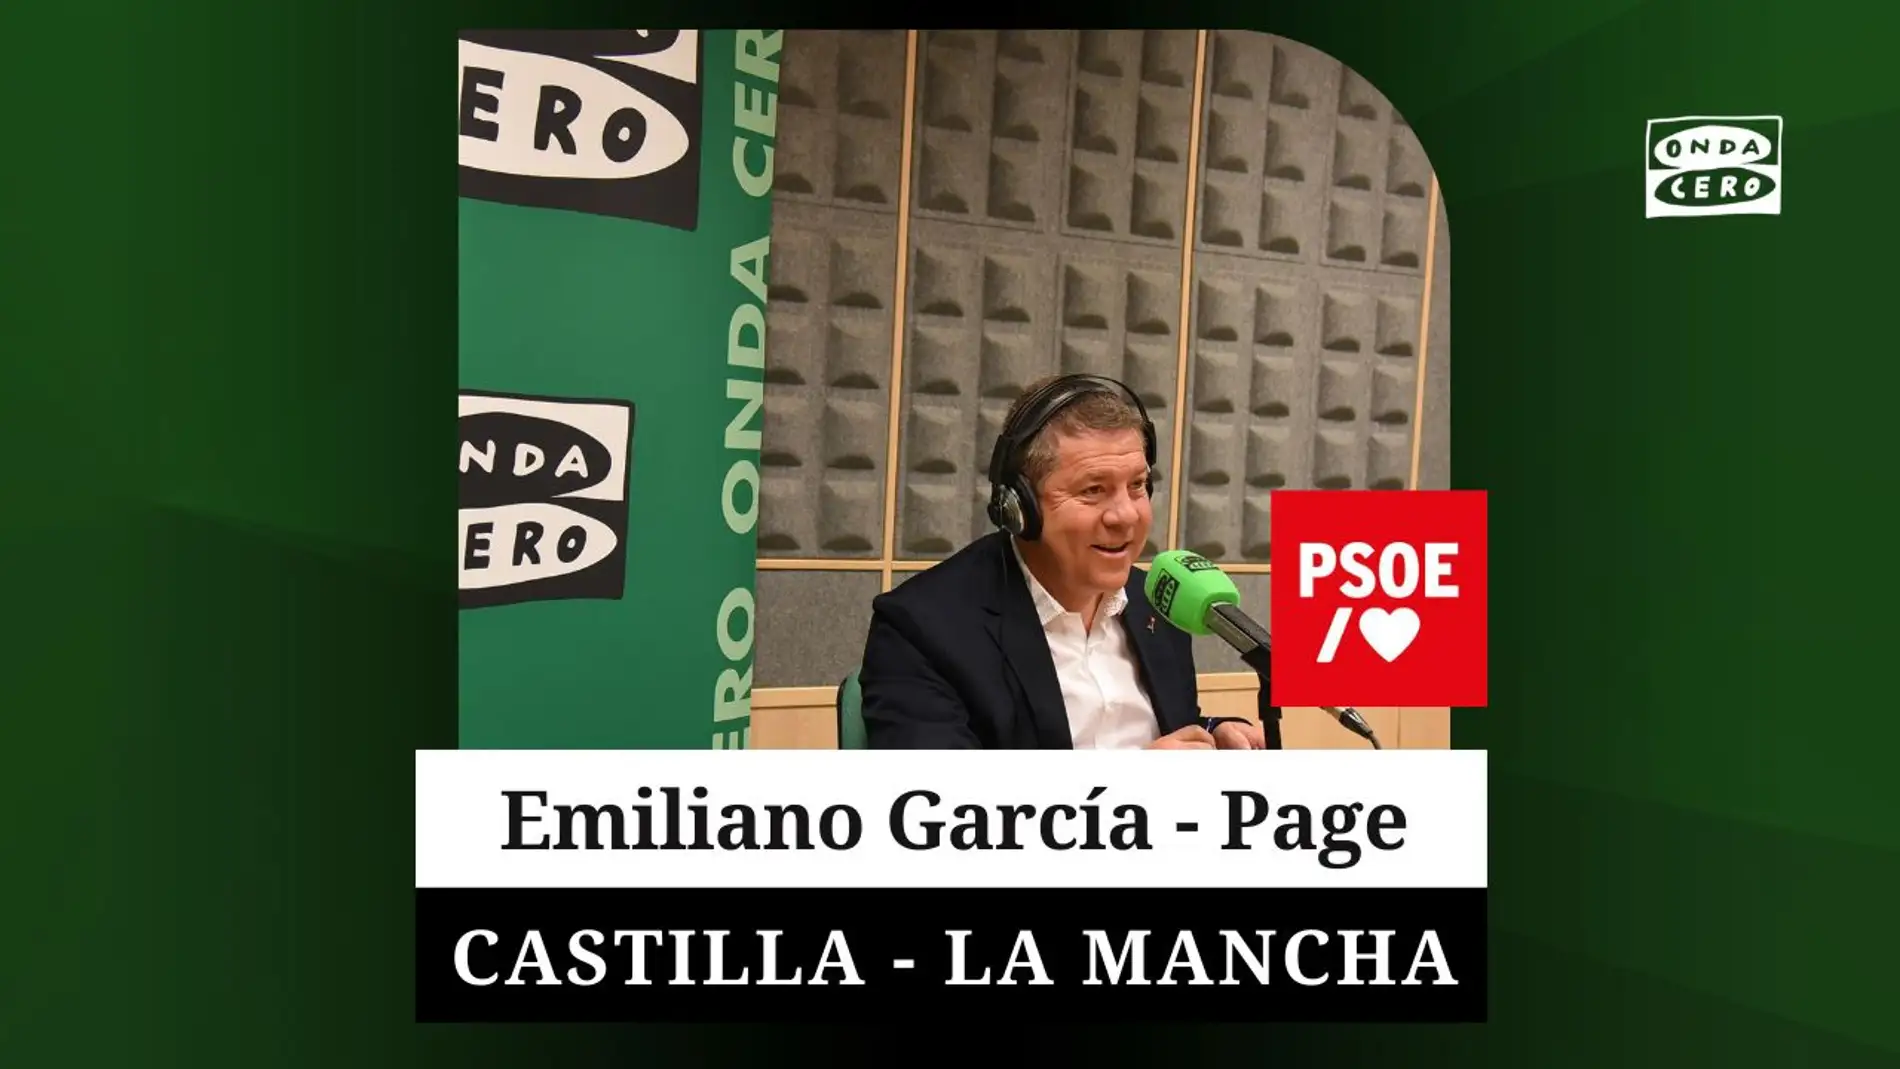 Emiliano García - Page, candidato socialista CLM